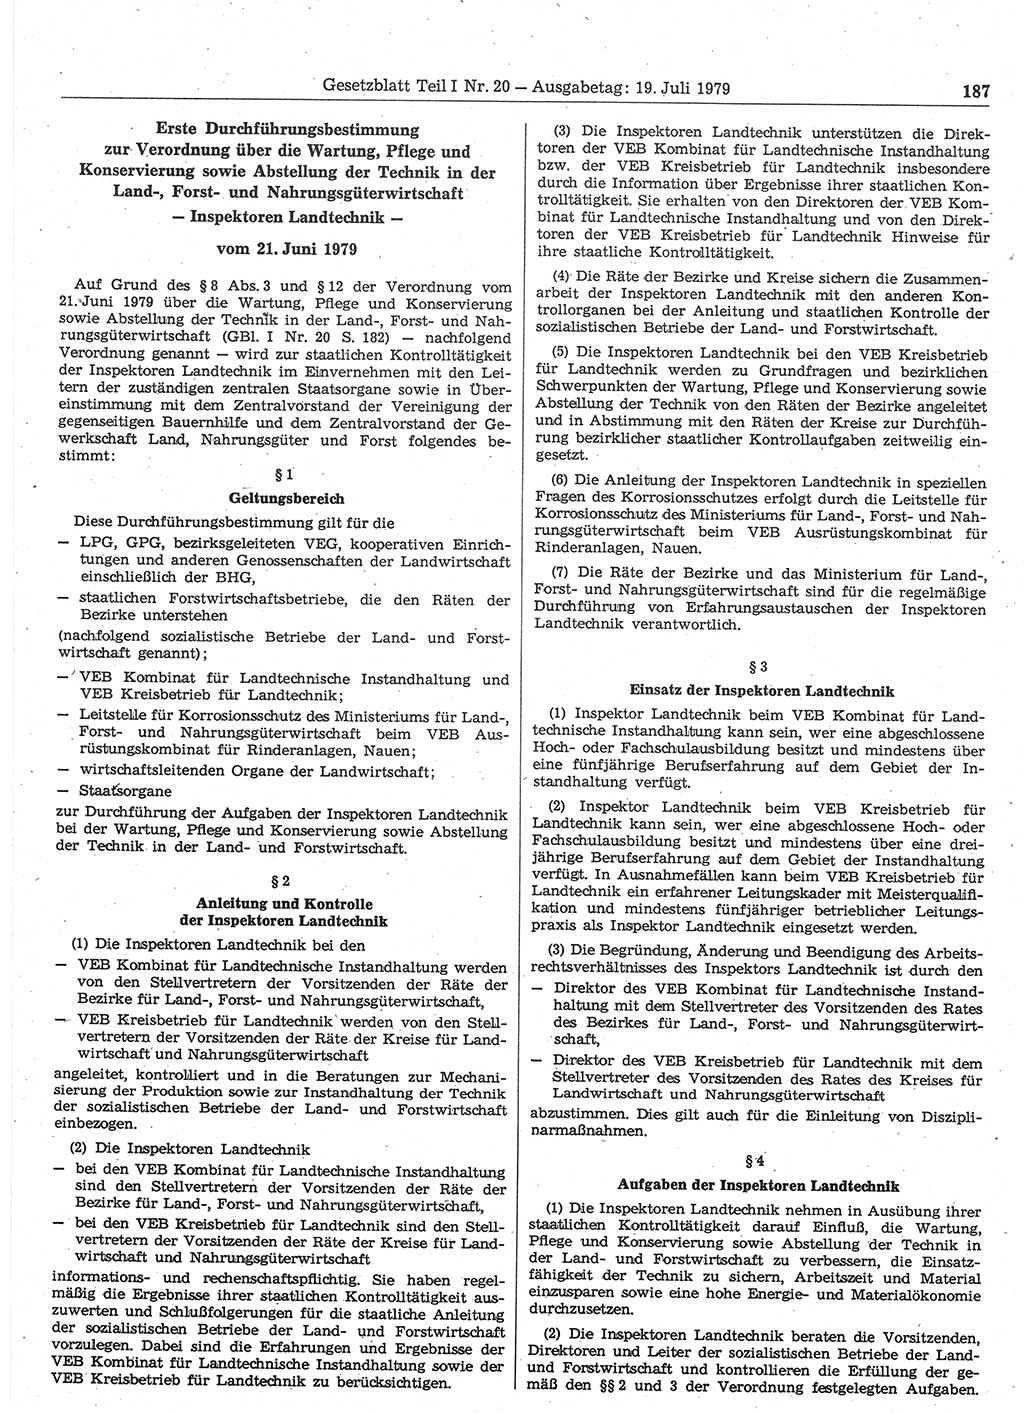 Gesetzblatt (GBl.) der Deutschen Demokratischen Republik (DDR) Teil Ⅰ 1979, Seite 187 (GBl. DDR Ⅰ 1979, S. 187)